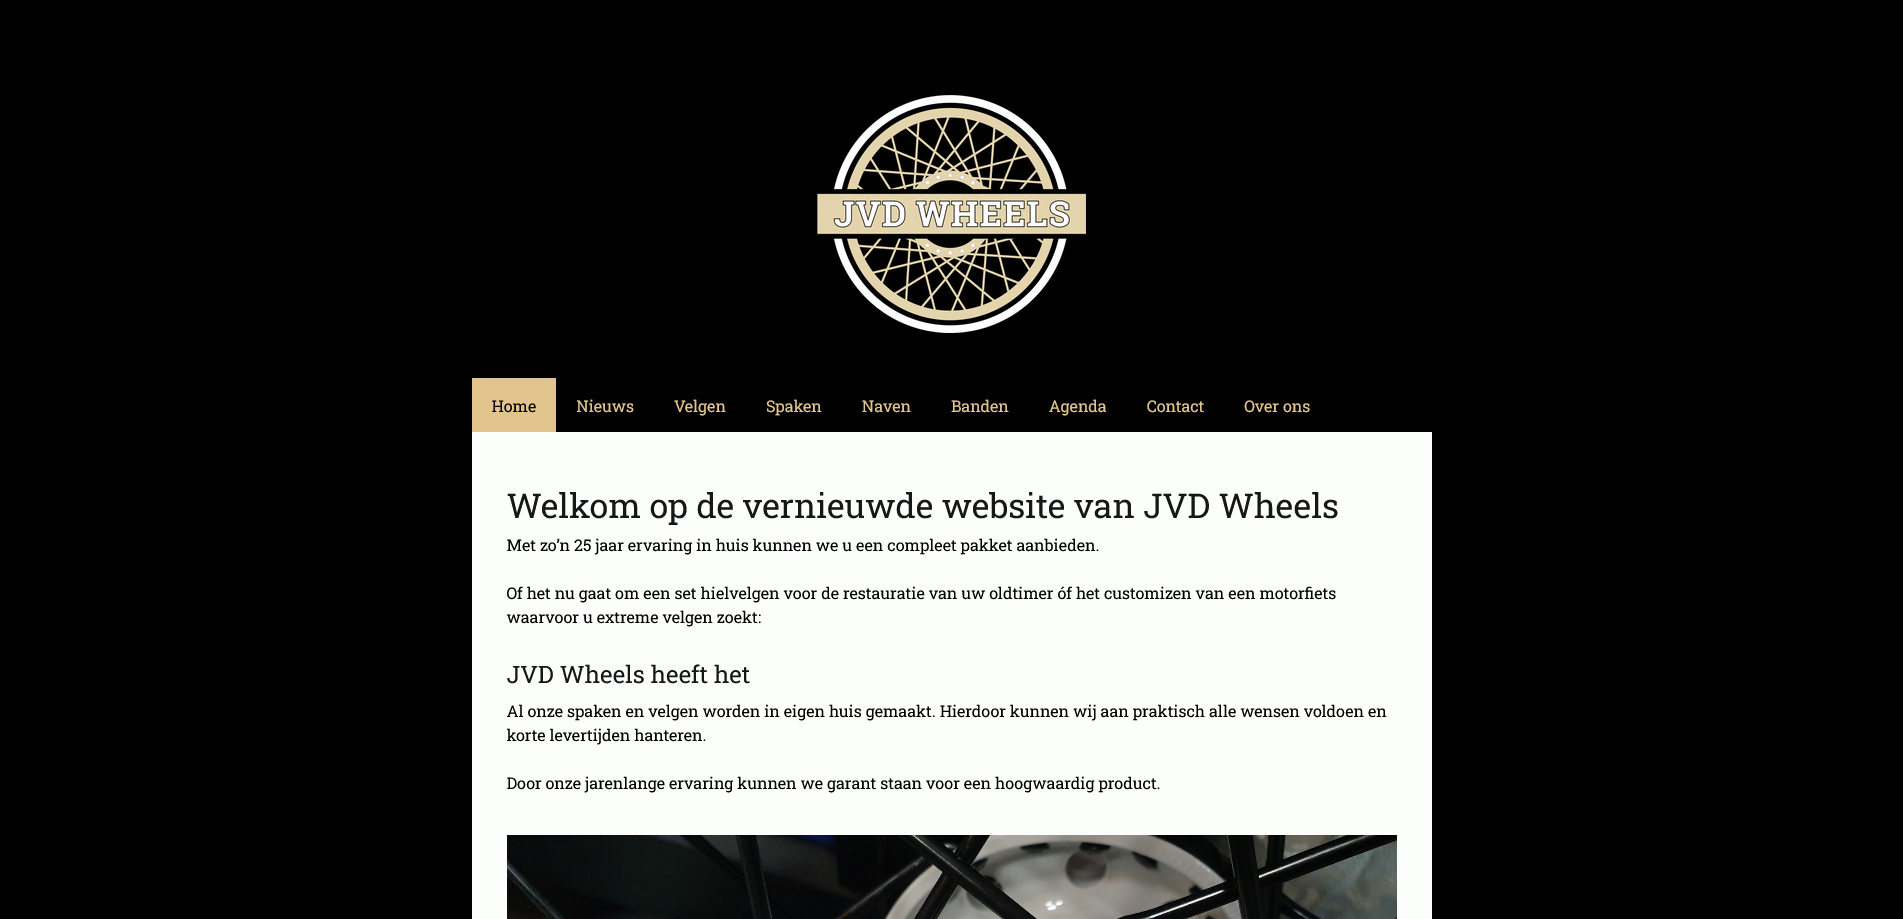 Screenshot 2021-11-15 at 15-43-04 Welkom op de vernieuwde website van JVD Wheels